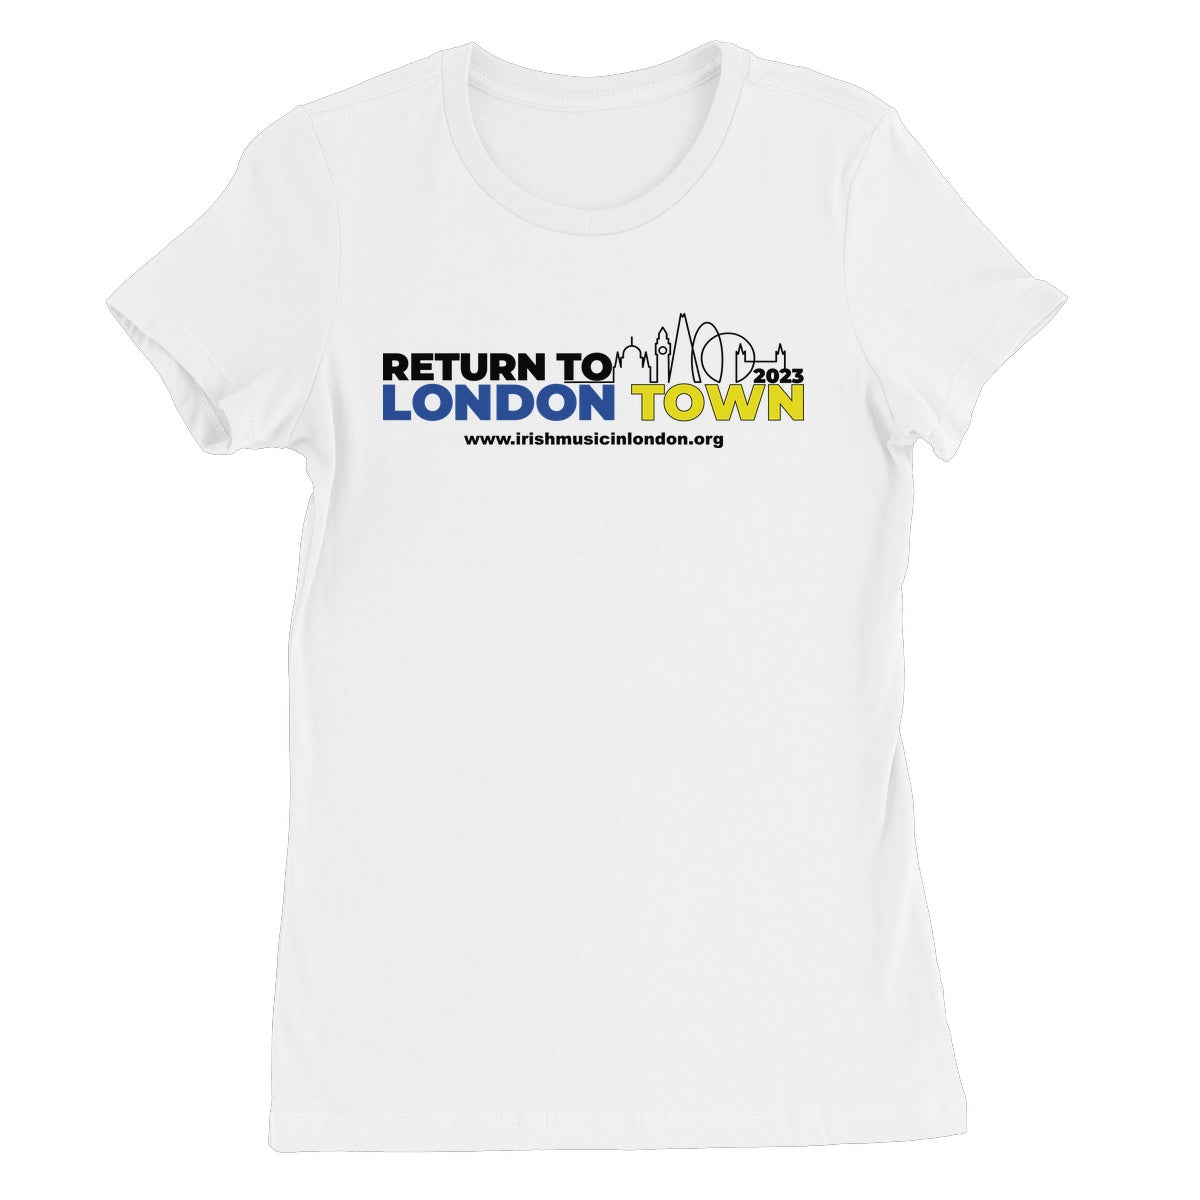 Return to London Town 2023 Women's T-Shirt